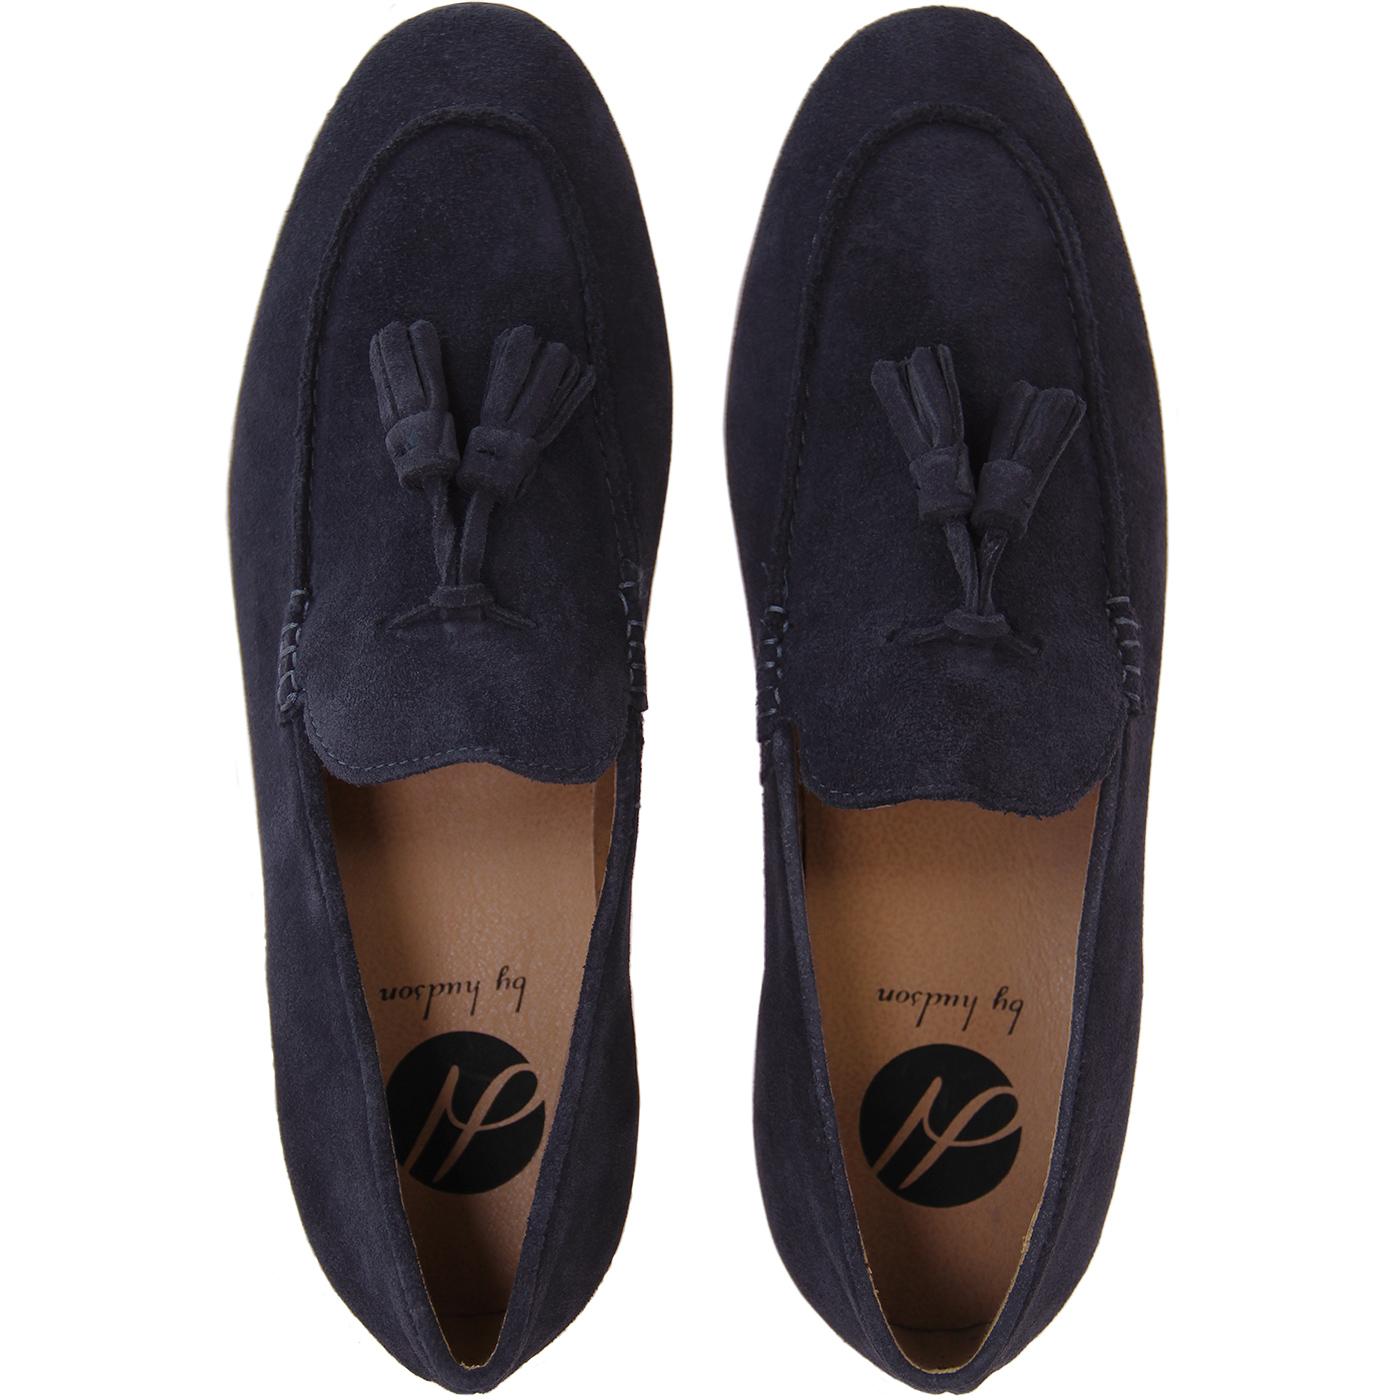 HUDSON Bolton Retro Mod Suede Tassel Loafer Shoes Navy